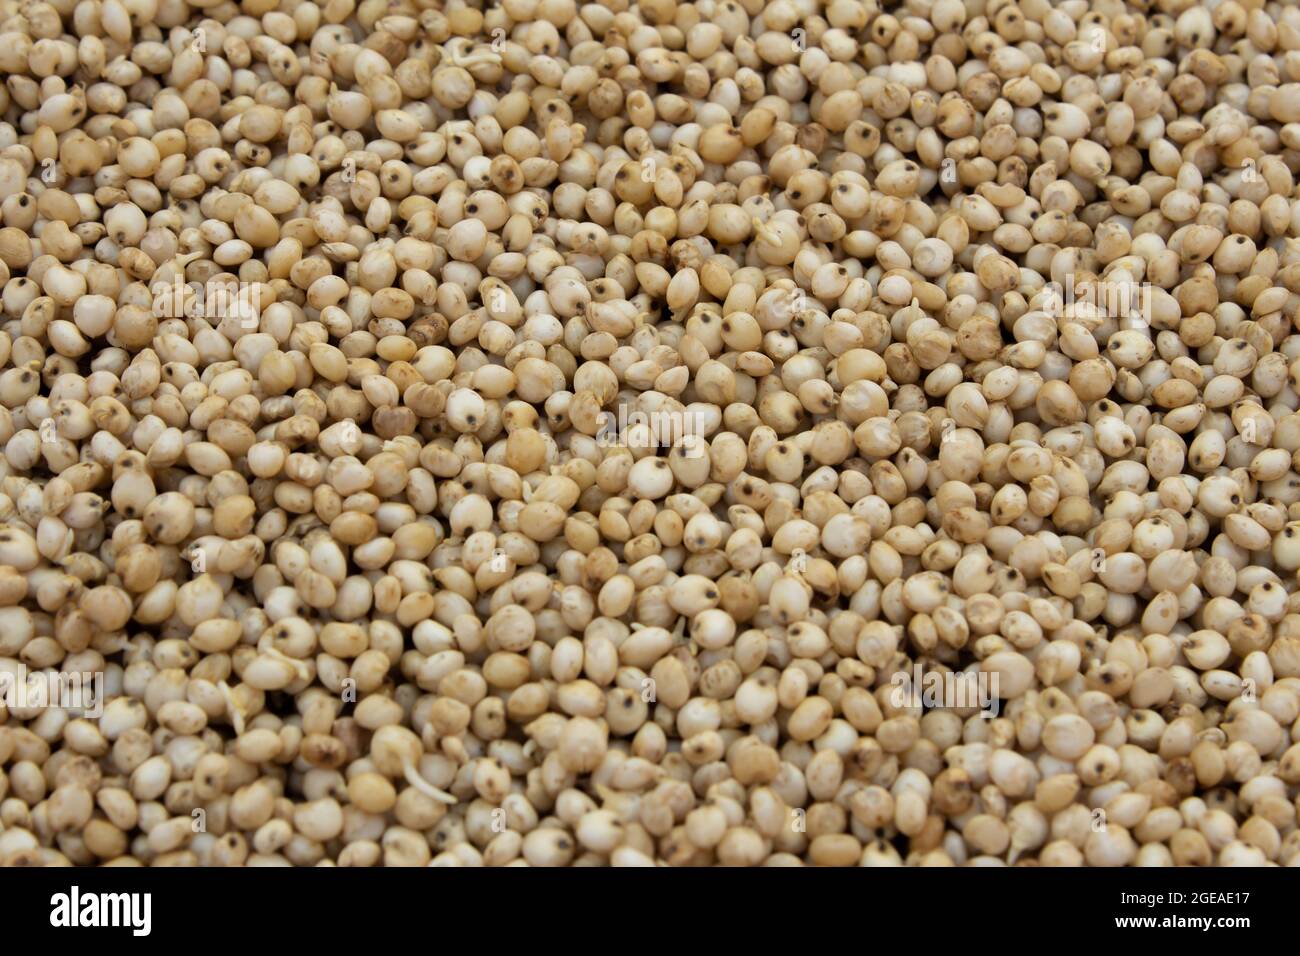 Vue du mil proso (également connu sous le nom de millet commun) qui est un aliment riche en protéines Banque D'Images